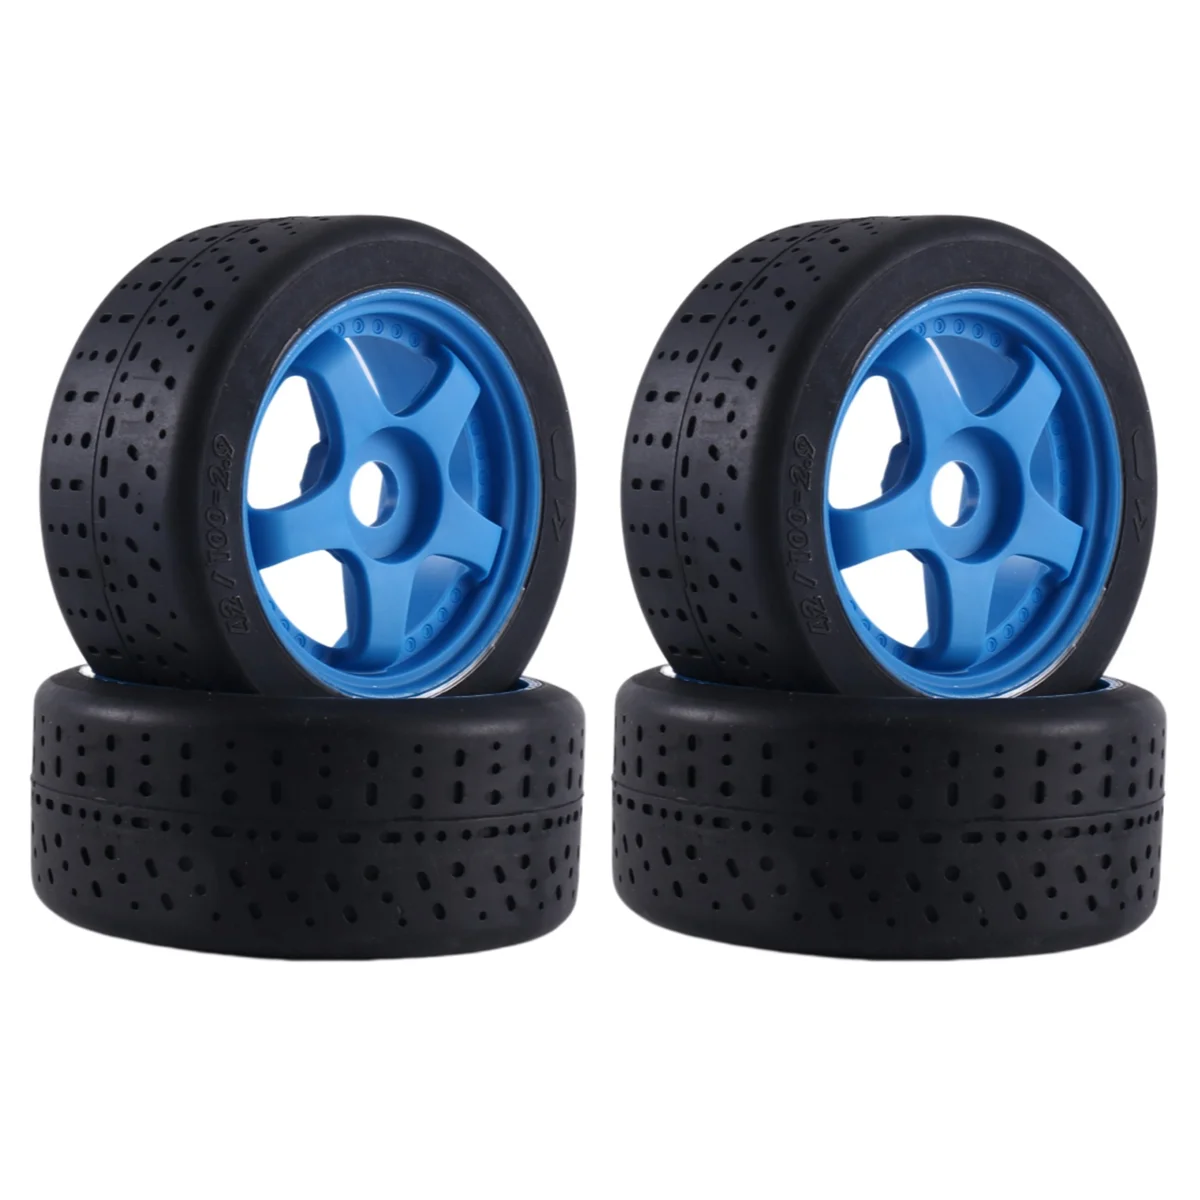 

Шины на 5 спицах 1/7x42 мм, 4 шт., 17 мм, шестигранное колесо для Arrma, детали для радиоуправляемых автомобилей, голубые